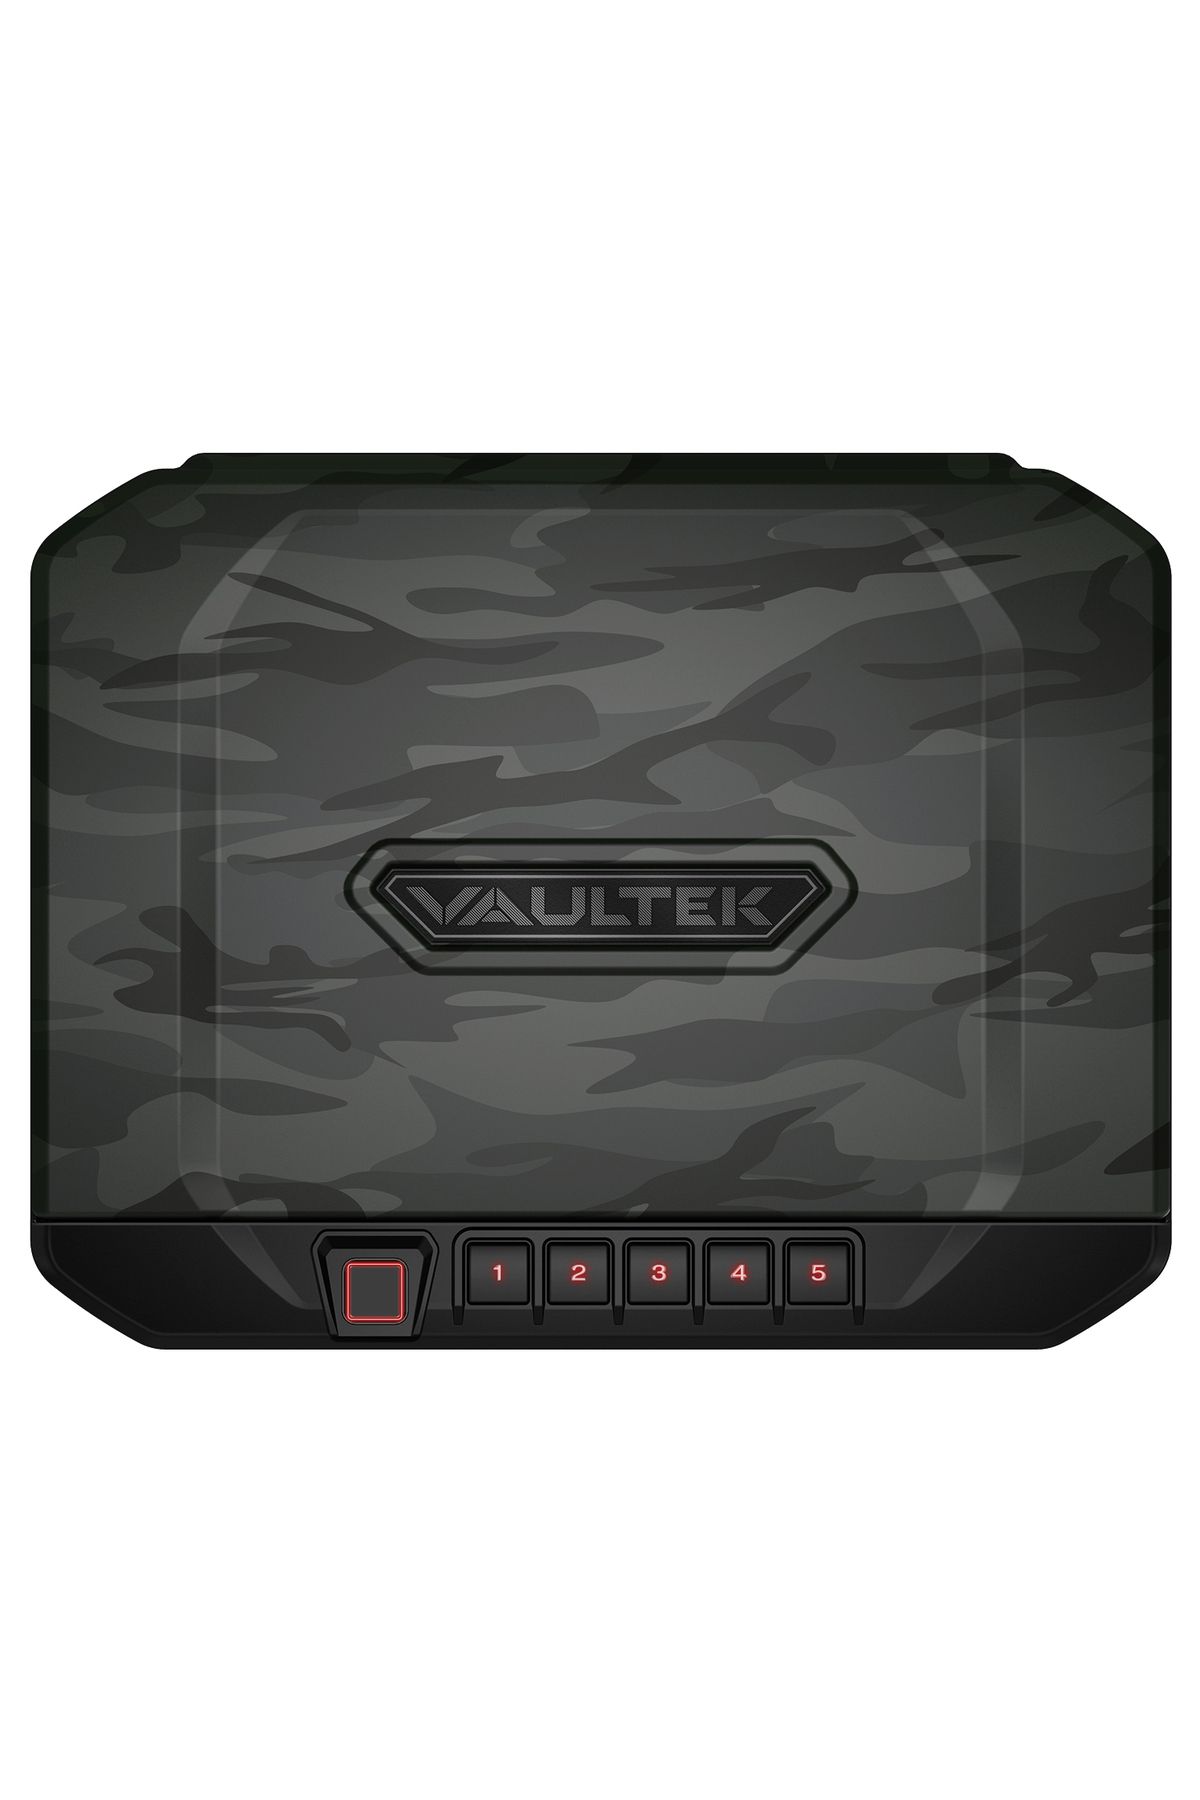 Vaultek Biometric Çelik Kasa